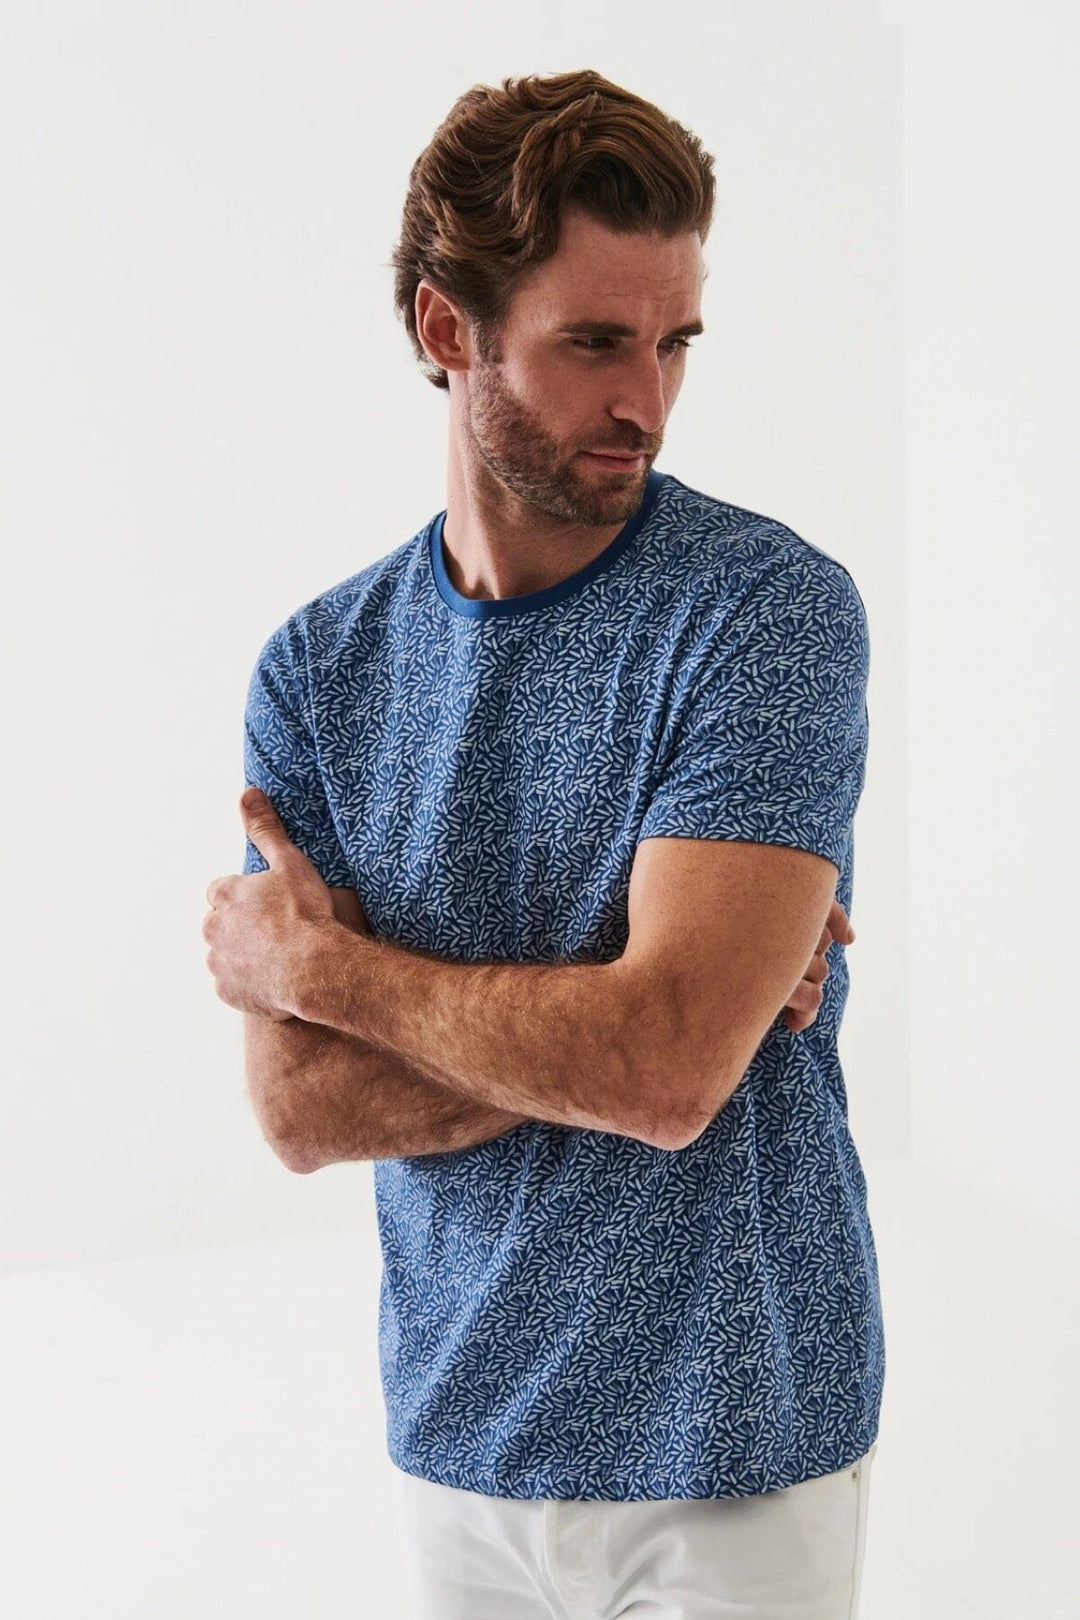 T-shirt imprimé stretch Homme - Hauts - T-shirt Patrick Assaraf